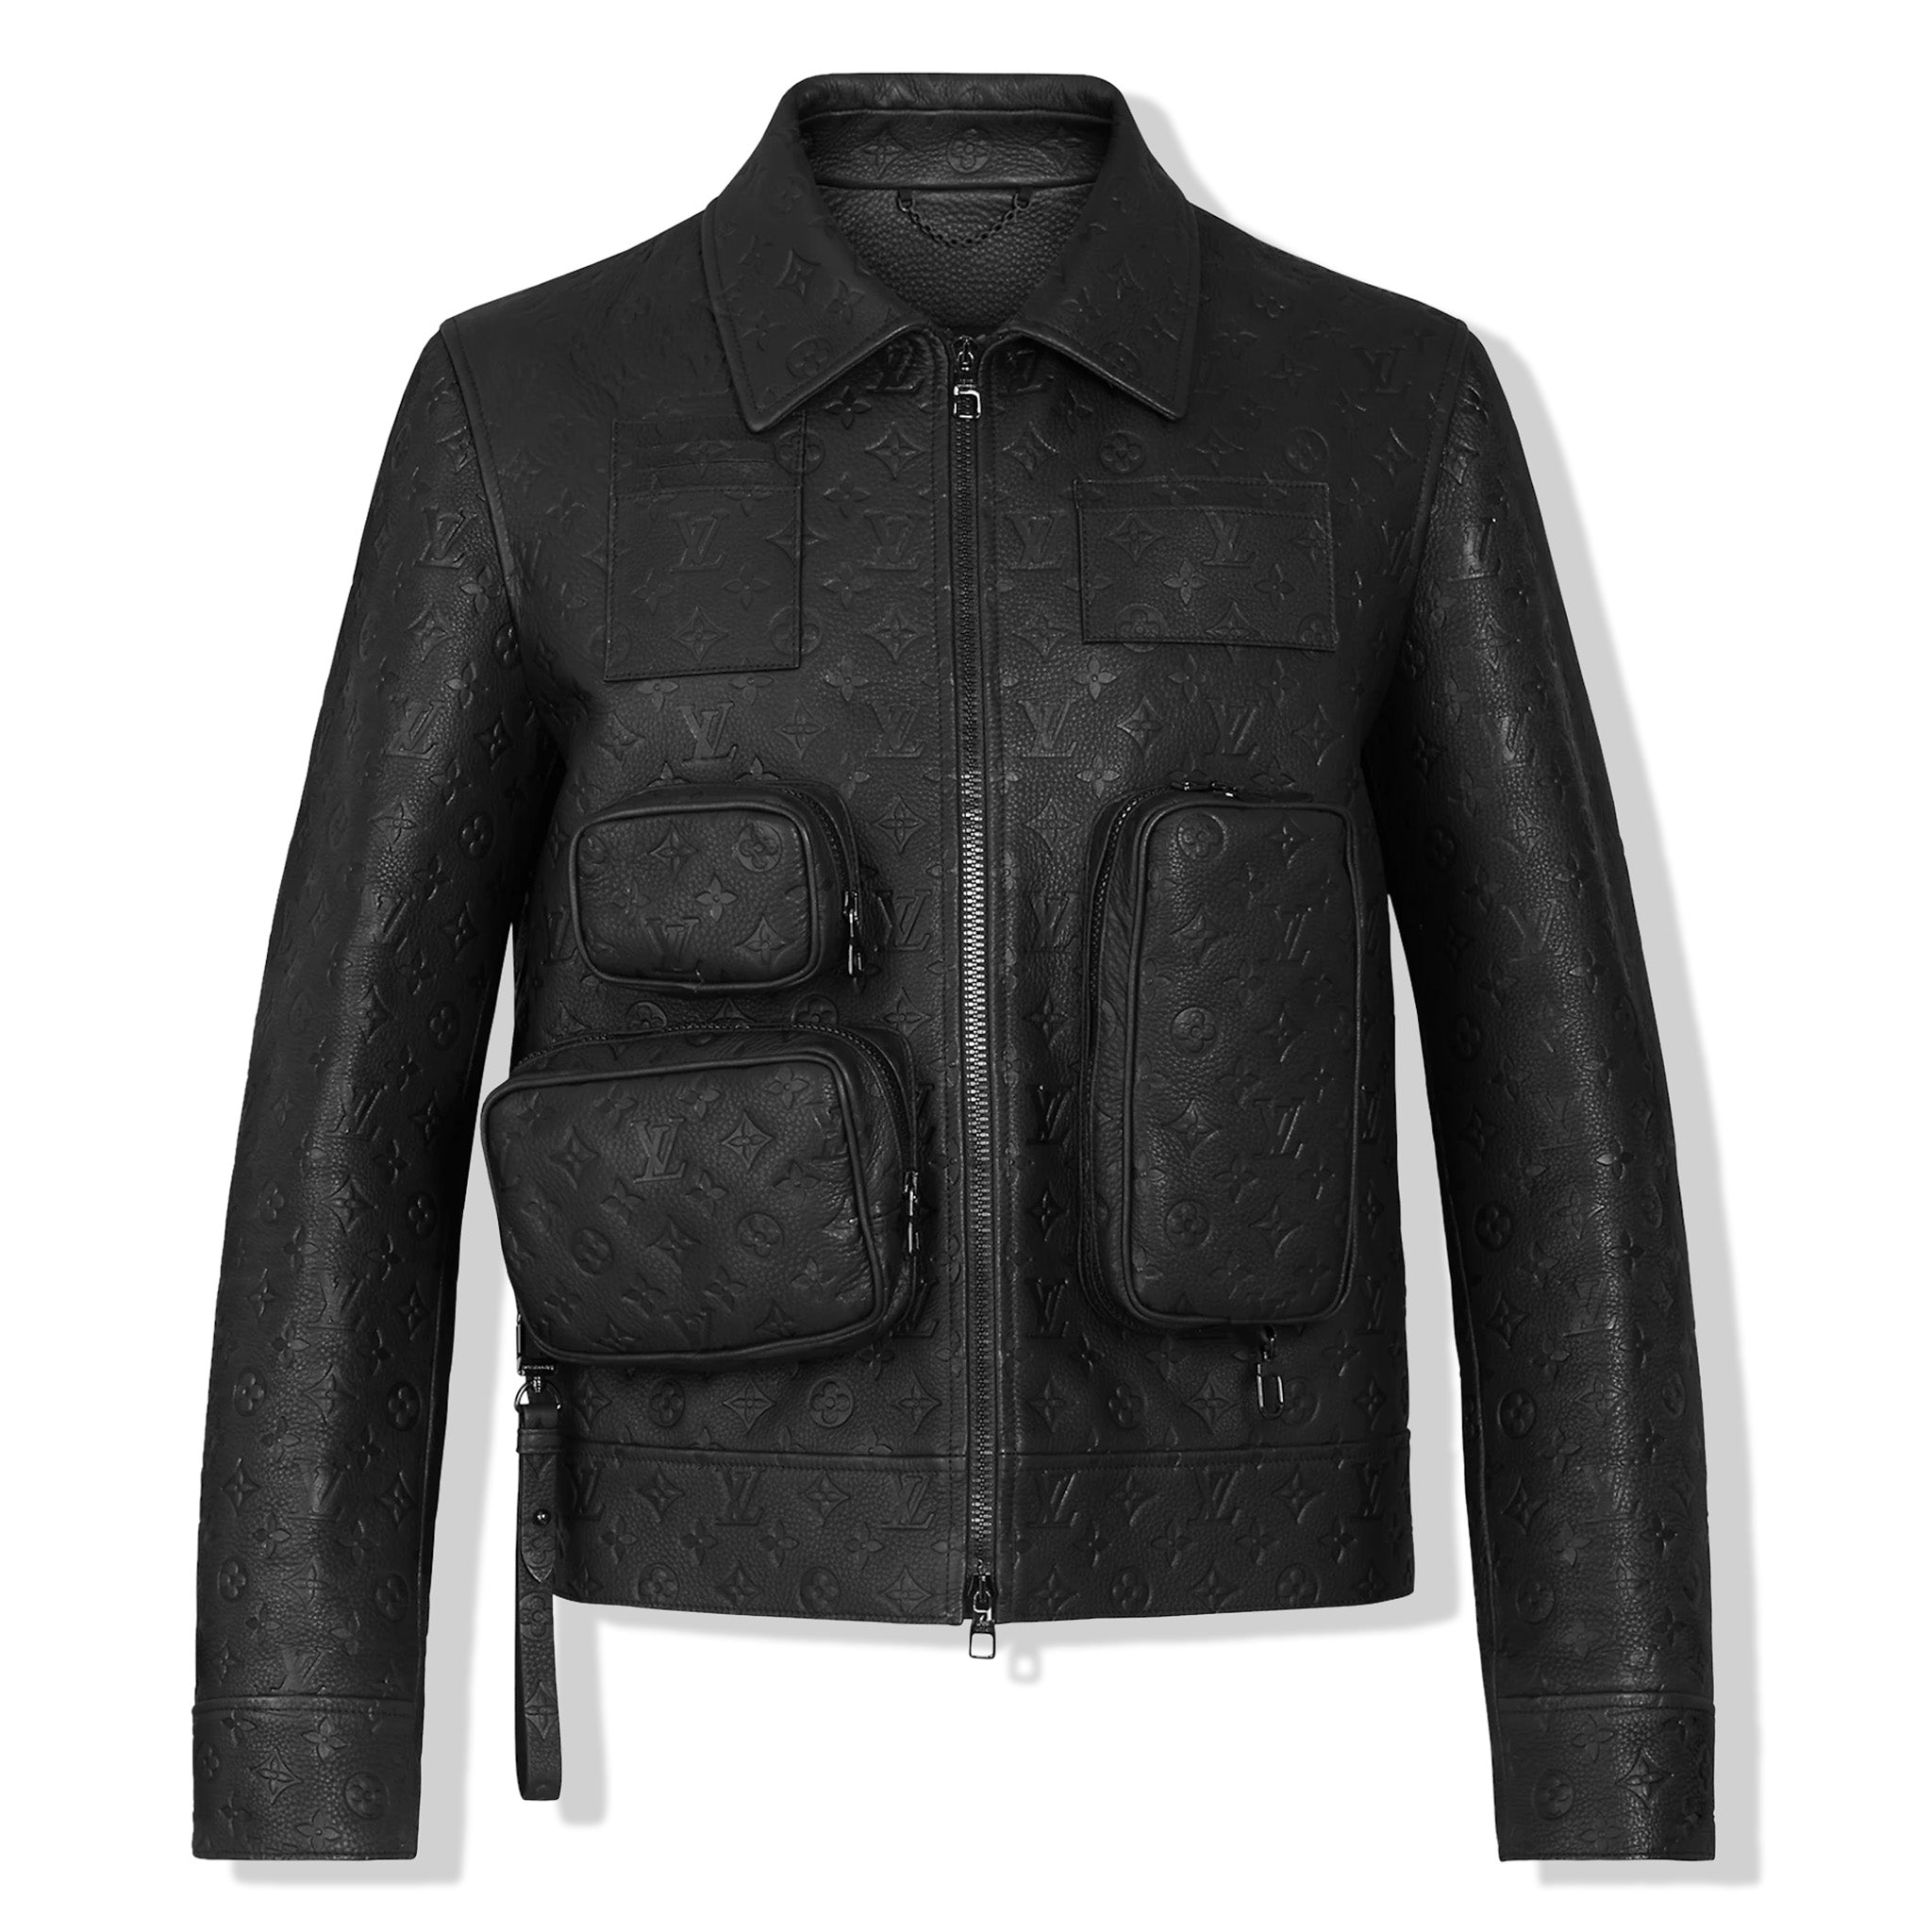 Jacketars Louis Vuitton Leather Jacket